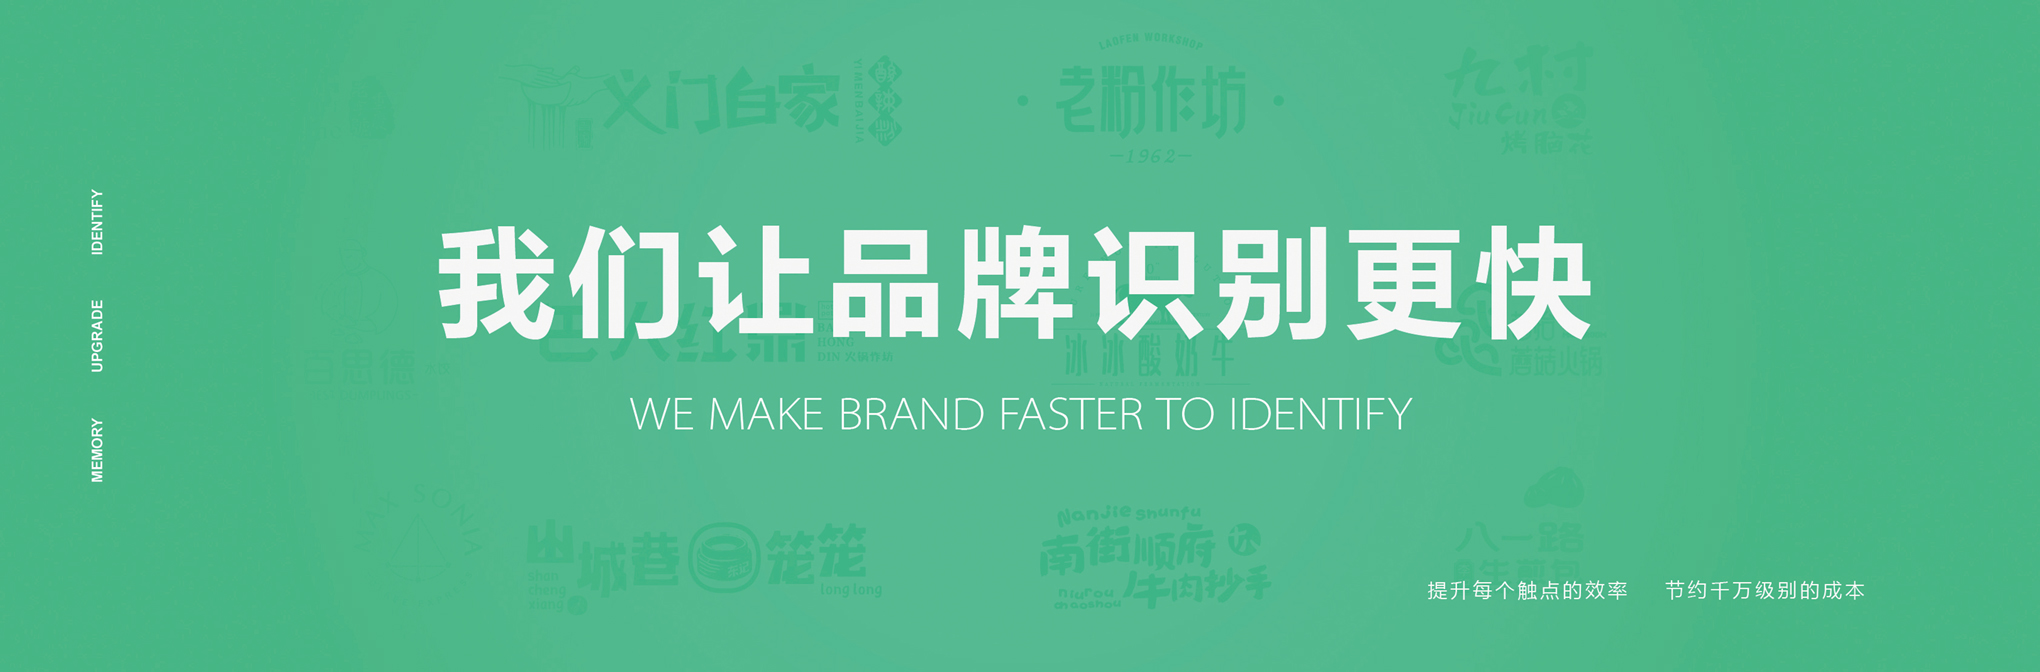 企業選擇重慶logo設計的3大考察要點